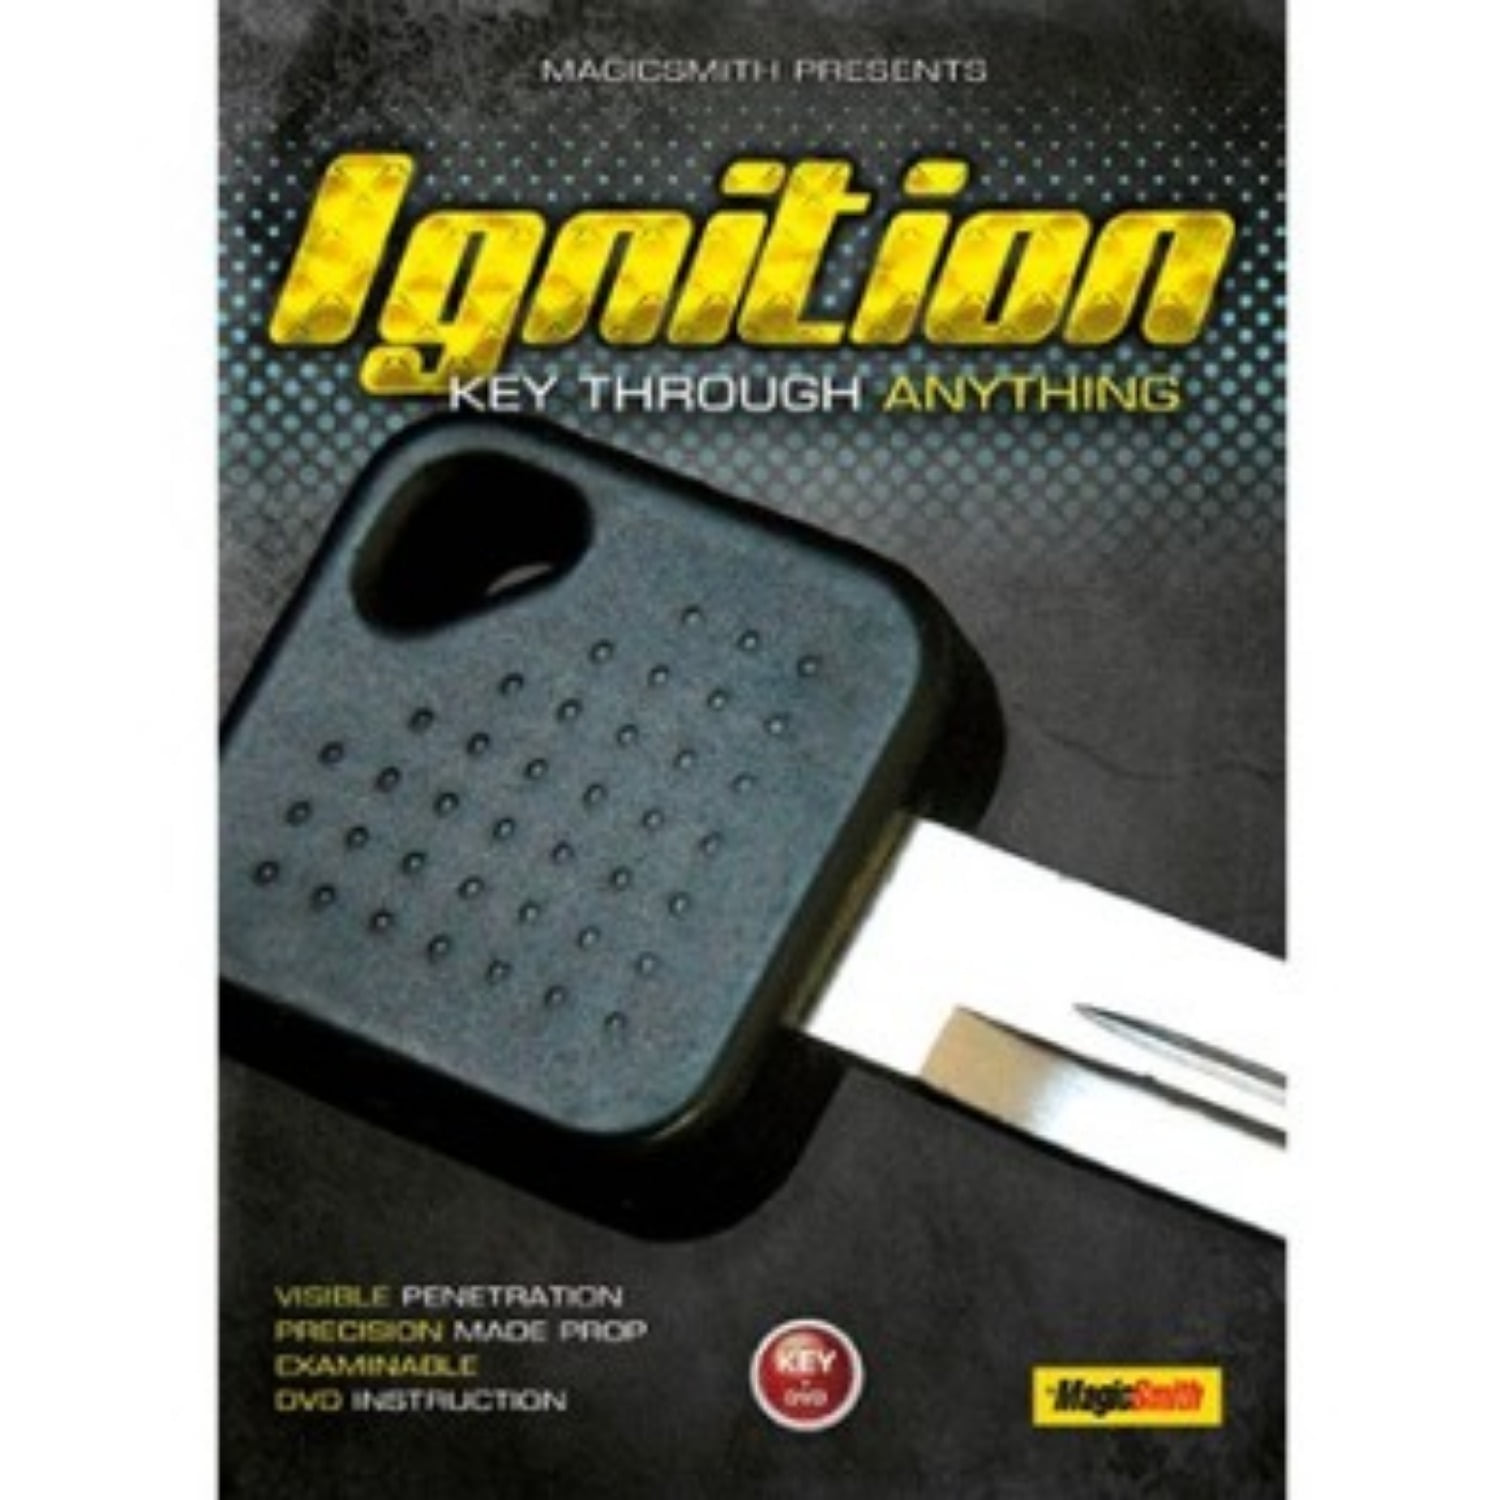 [이그니션] Ignition by Chris Smith 빌린지폐를 찢었다 복구시키는 열쇠입니다.